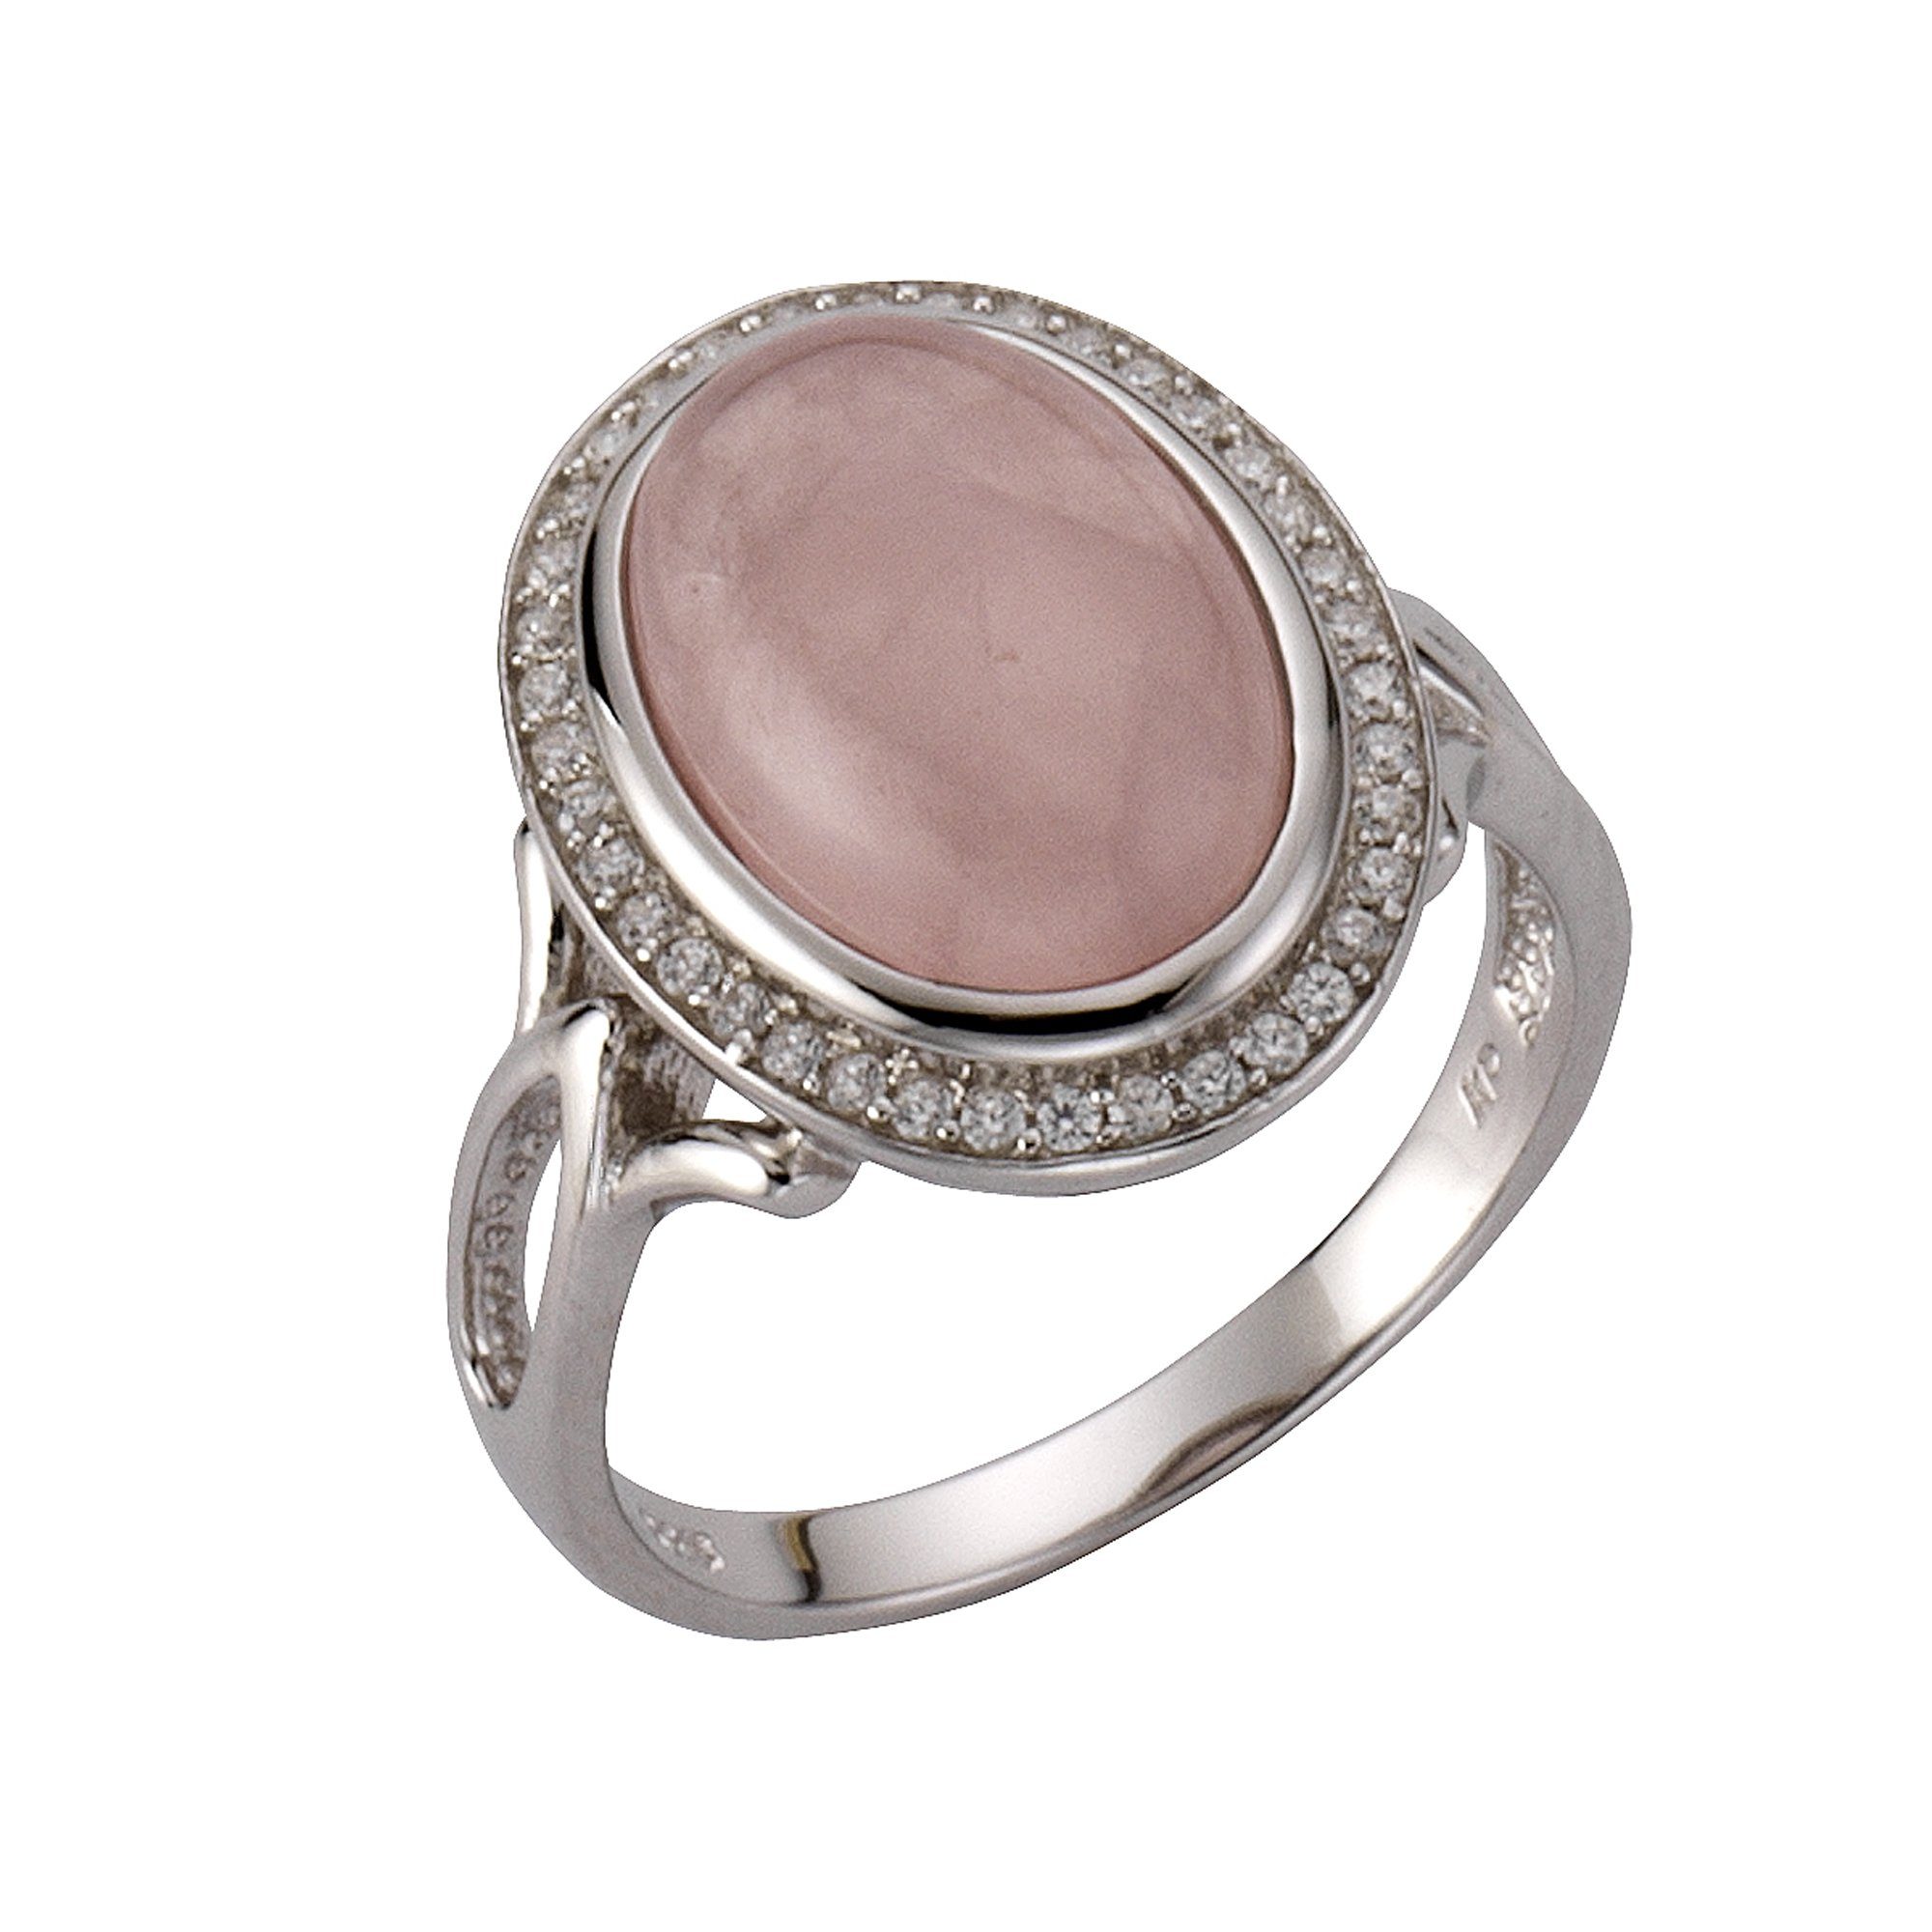 50-62 neu Edelstein Ring rosé rund 925 echt Silber Sterlingsilber Damen Gr 